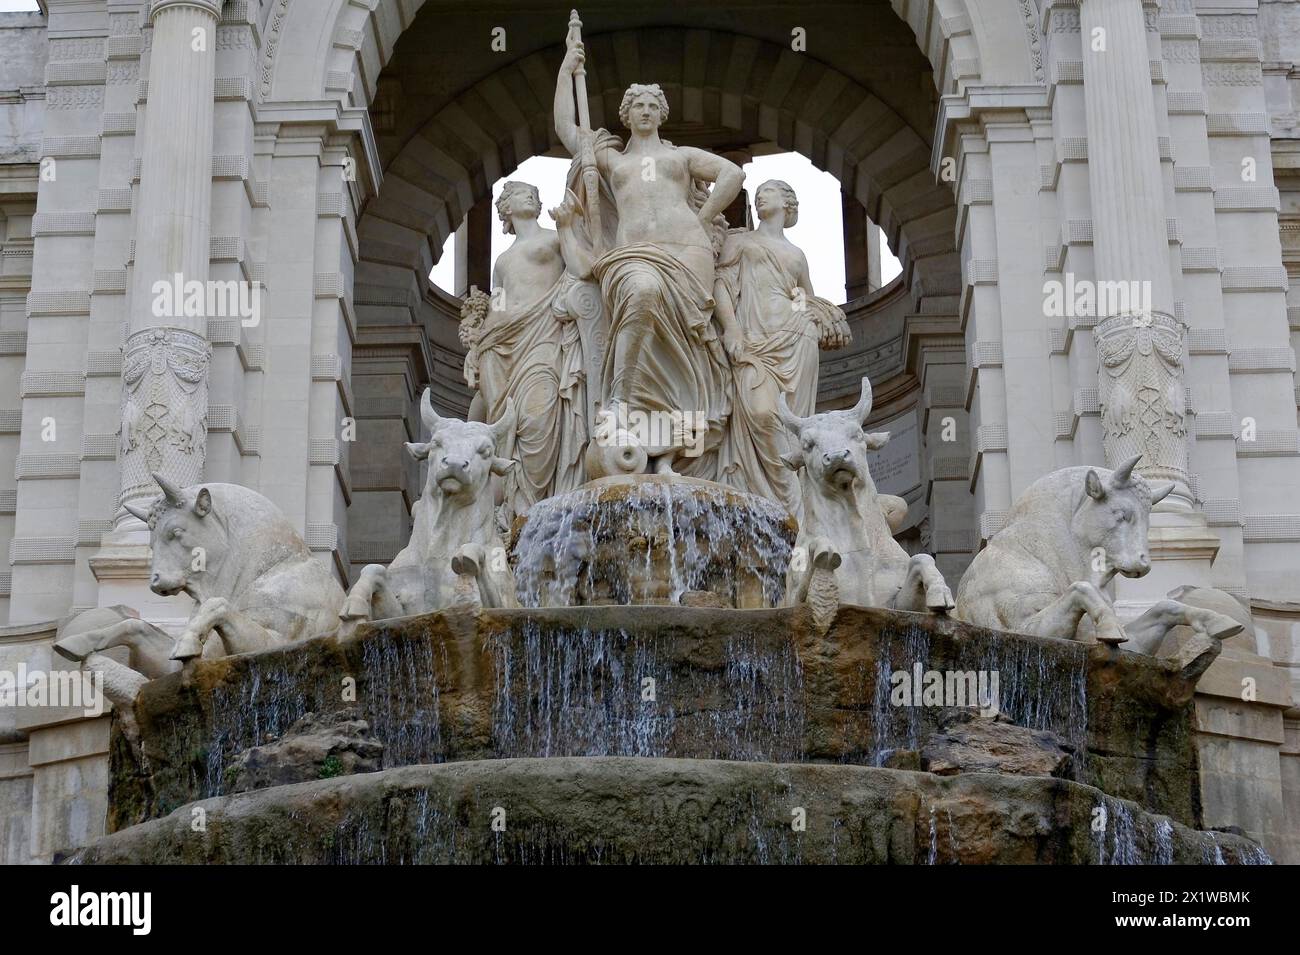 Palais Longchamp, Marsiglia, scultura allegorica in marmo di una donna circondata da animali in una fontana, Marsiglia, dipartimento Bouches-du-Rhone Foto Stock